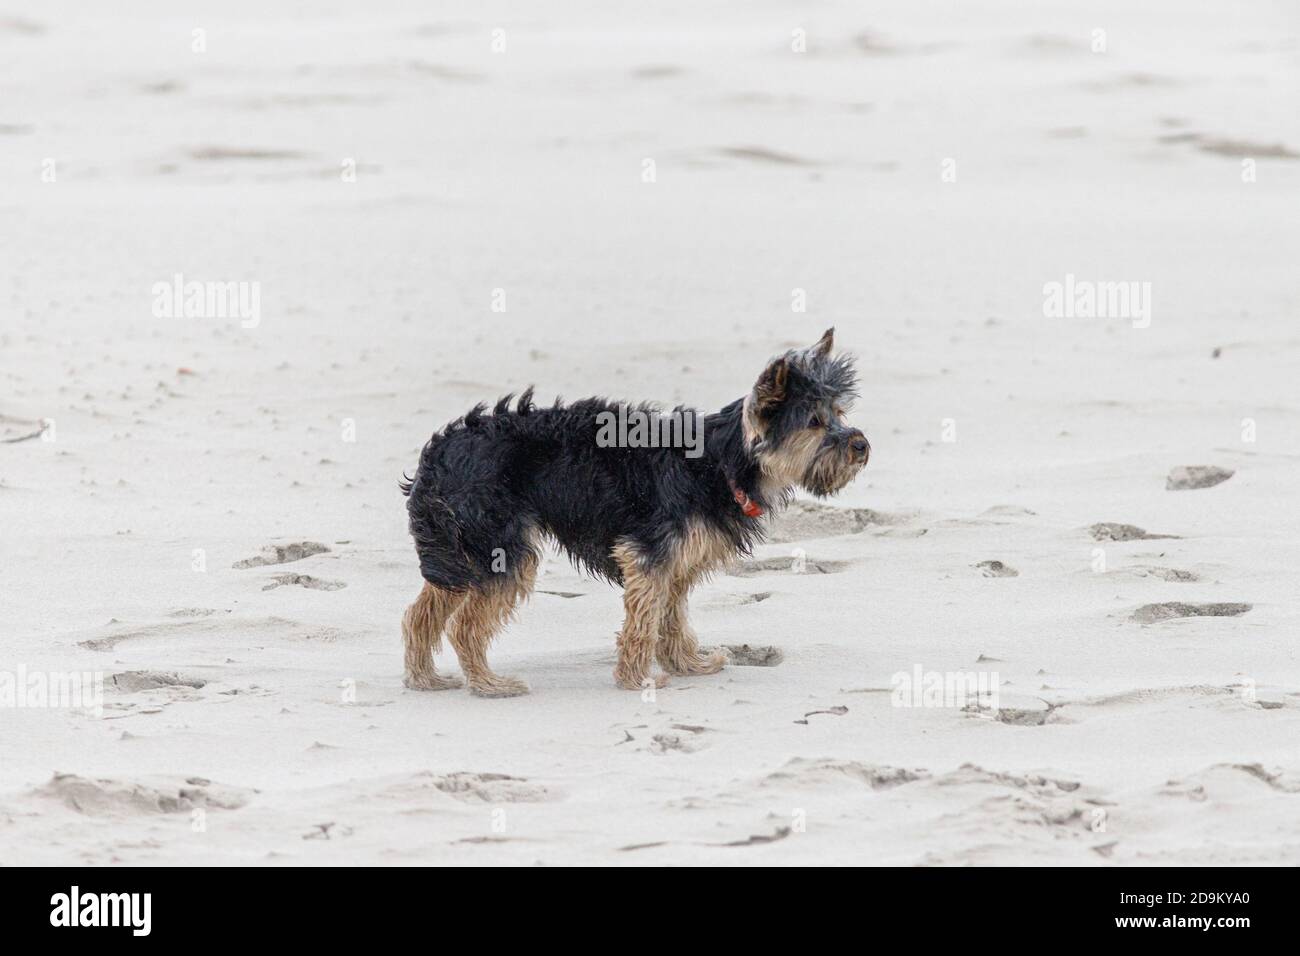 Freizeit, Meer, Menschen - Entspannung am Wattenmeer. Hund, Yorkshire Terrier steht im Sand und kümmert sich um seine Leute. Stockfoto